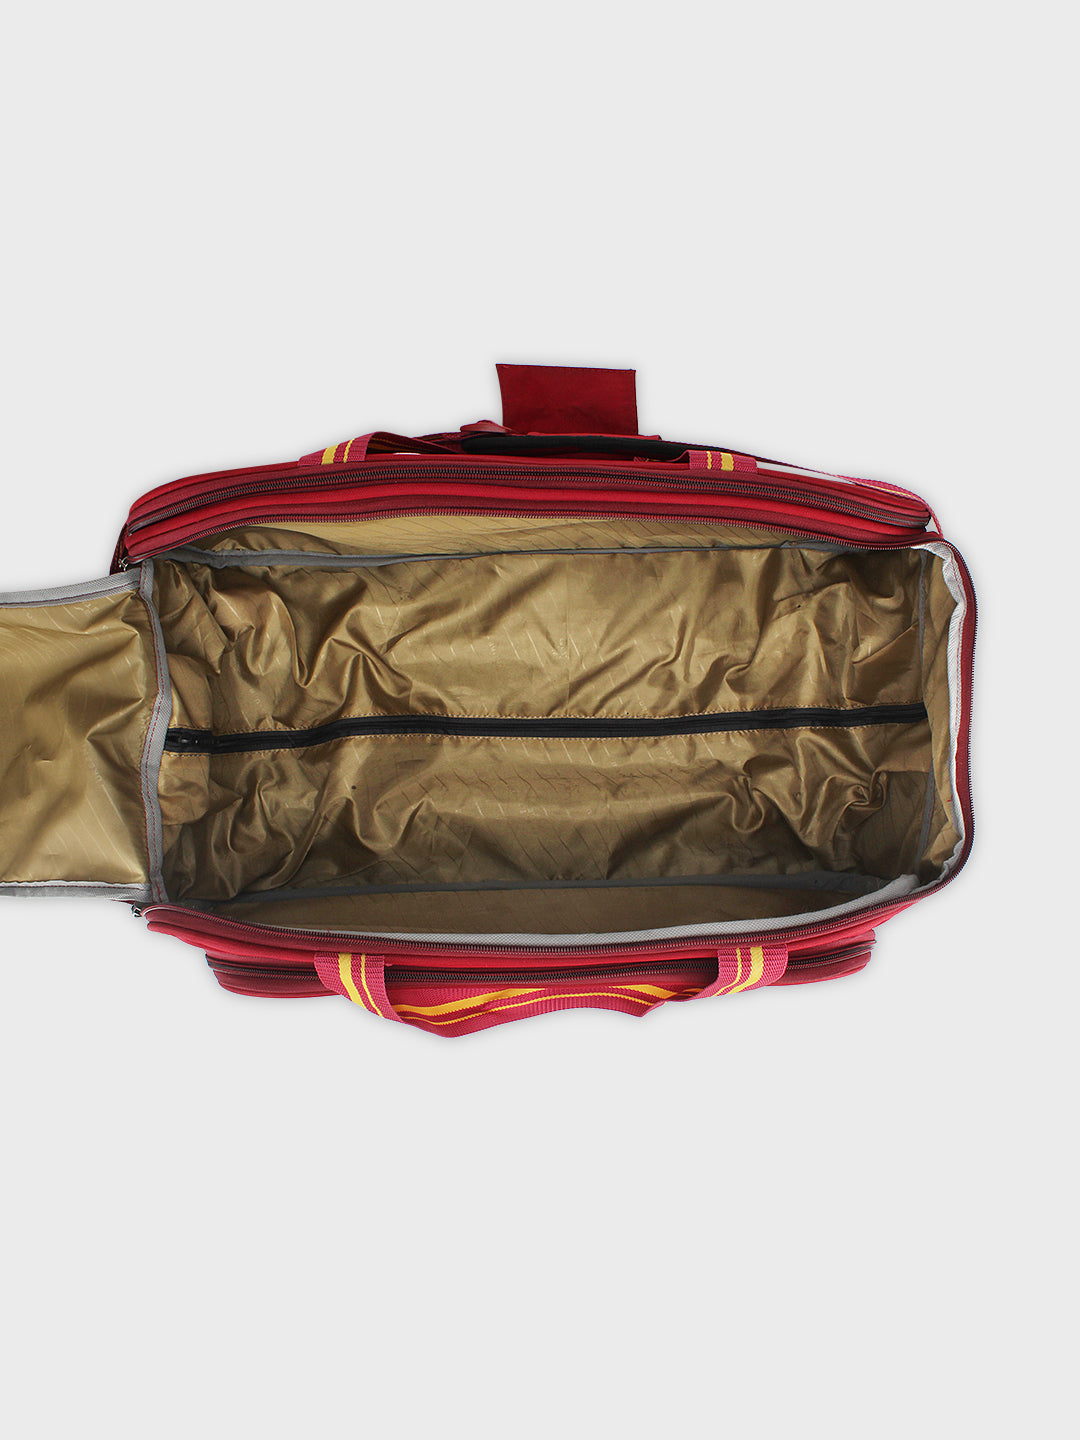 Ritzy 65cm Duffle Trolly Bag